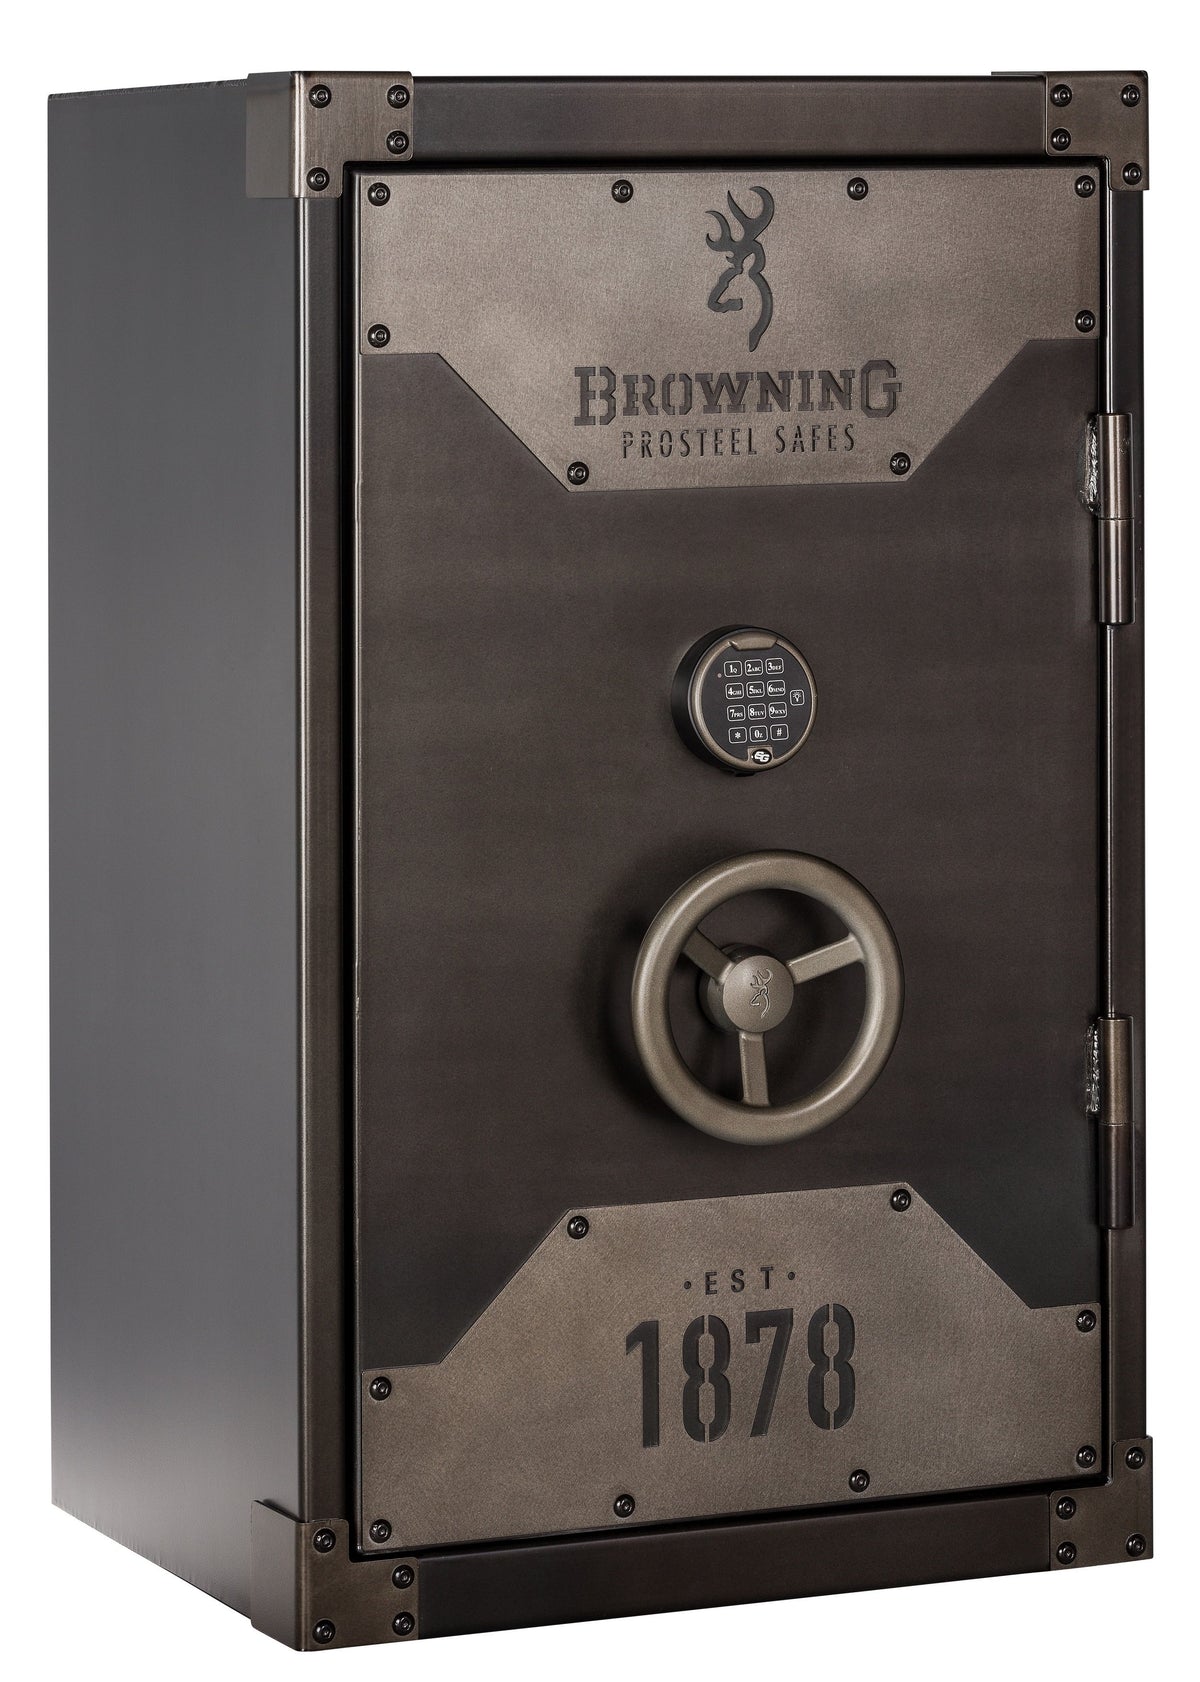 Browning 1878-13 Closet Burglar &amp; 90 Minute Fire Safe